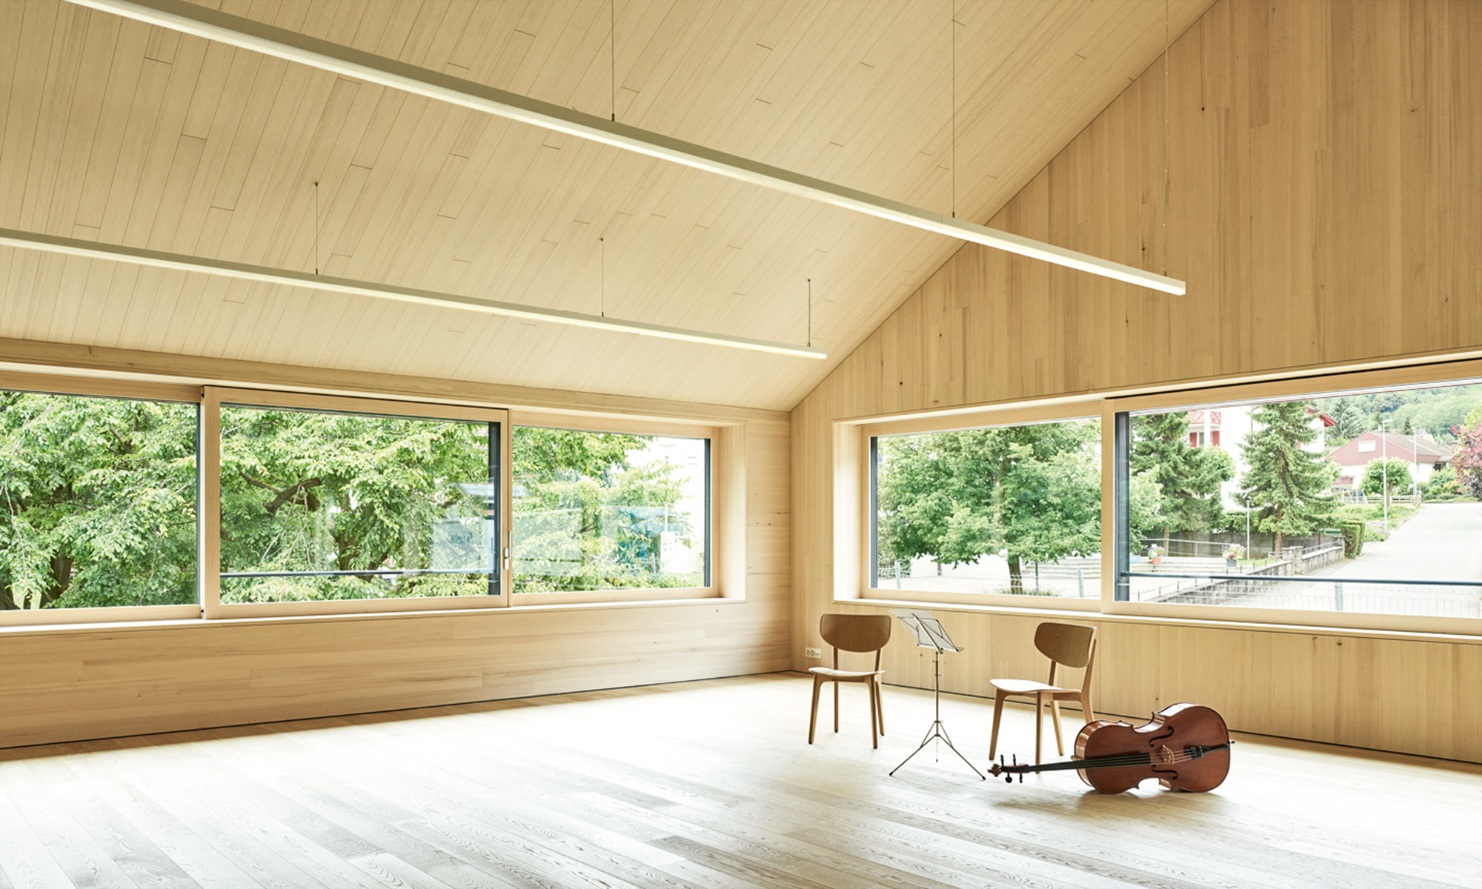 Salles de classe lumineuses avec aménagement intérieur en bois et instruments de musique